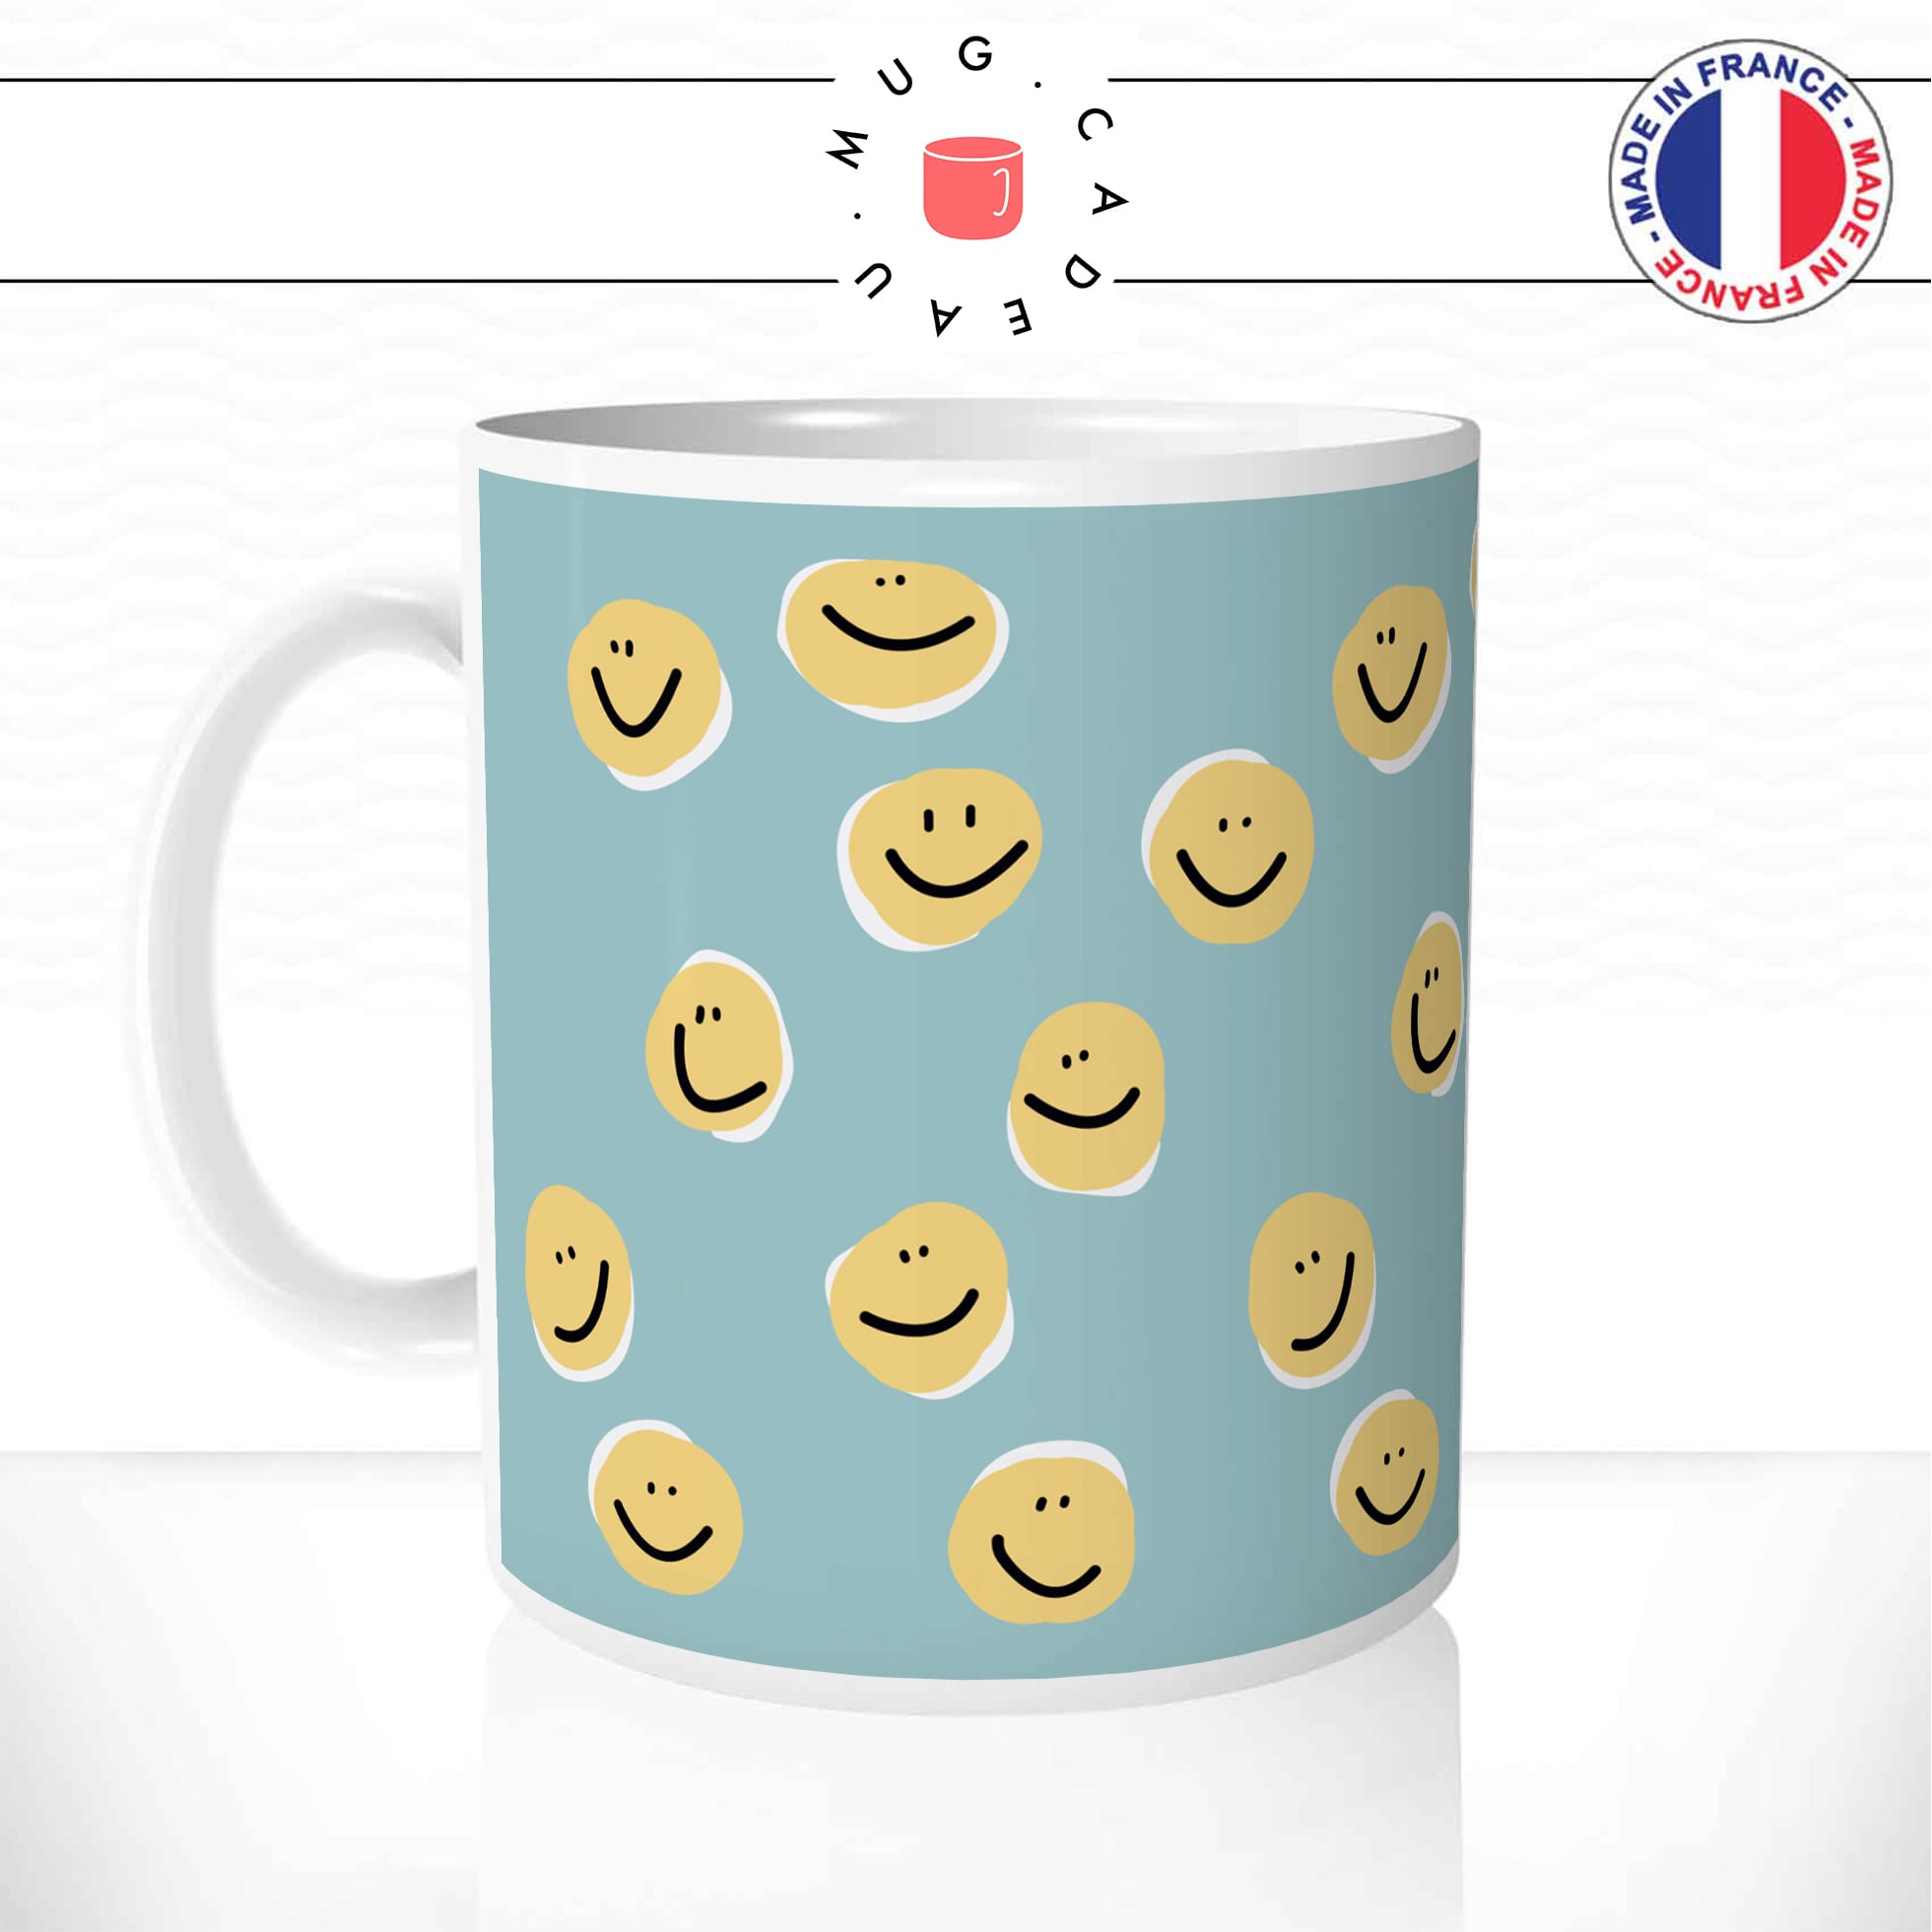 mug-tasse-emojis-emoticoon-content-smiley-sourire-jaune-dessin-fun-humour-café-thé-idée-cadeau-original-personnalisable2-min